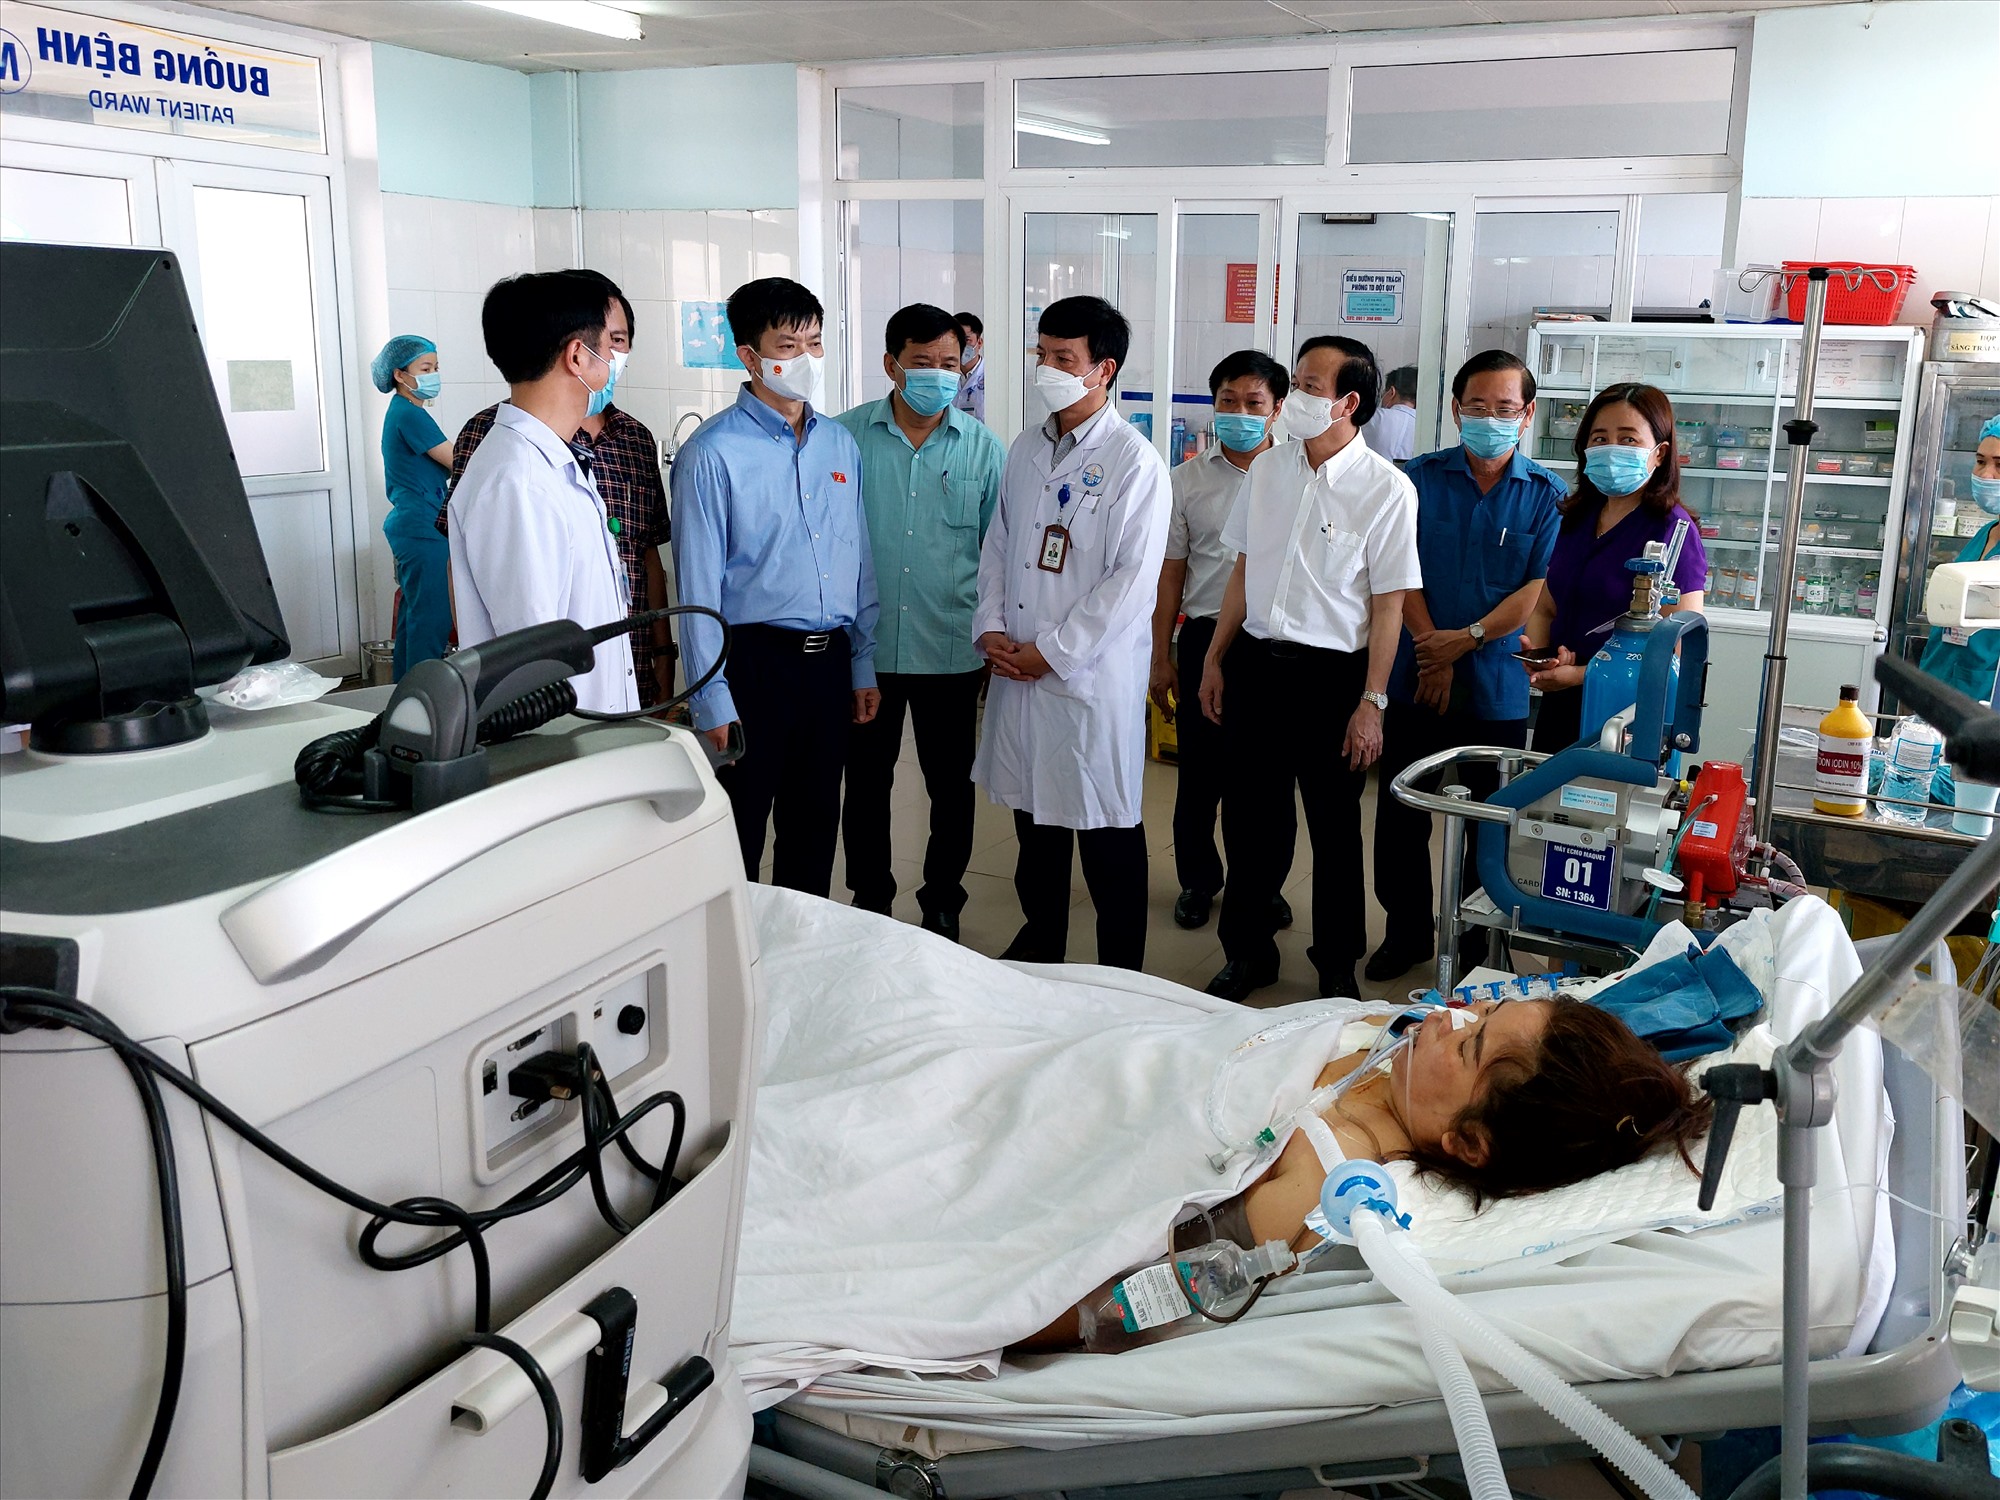 Bí thư Tỉnh ủy Lê Quang Tùng yêu cầu rà soát lại các cơ chế, chính sách của tỉnh đã ban hành, ưu tiên dành nguồn lực đầu tư, tạo điều kiện thuận lợi nhất cho ngành y tế hoạt động - Ảnh: N.T.H​